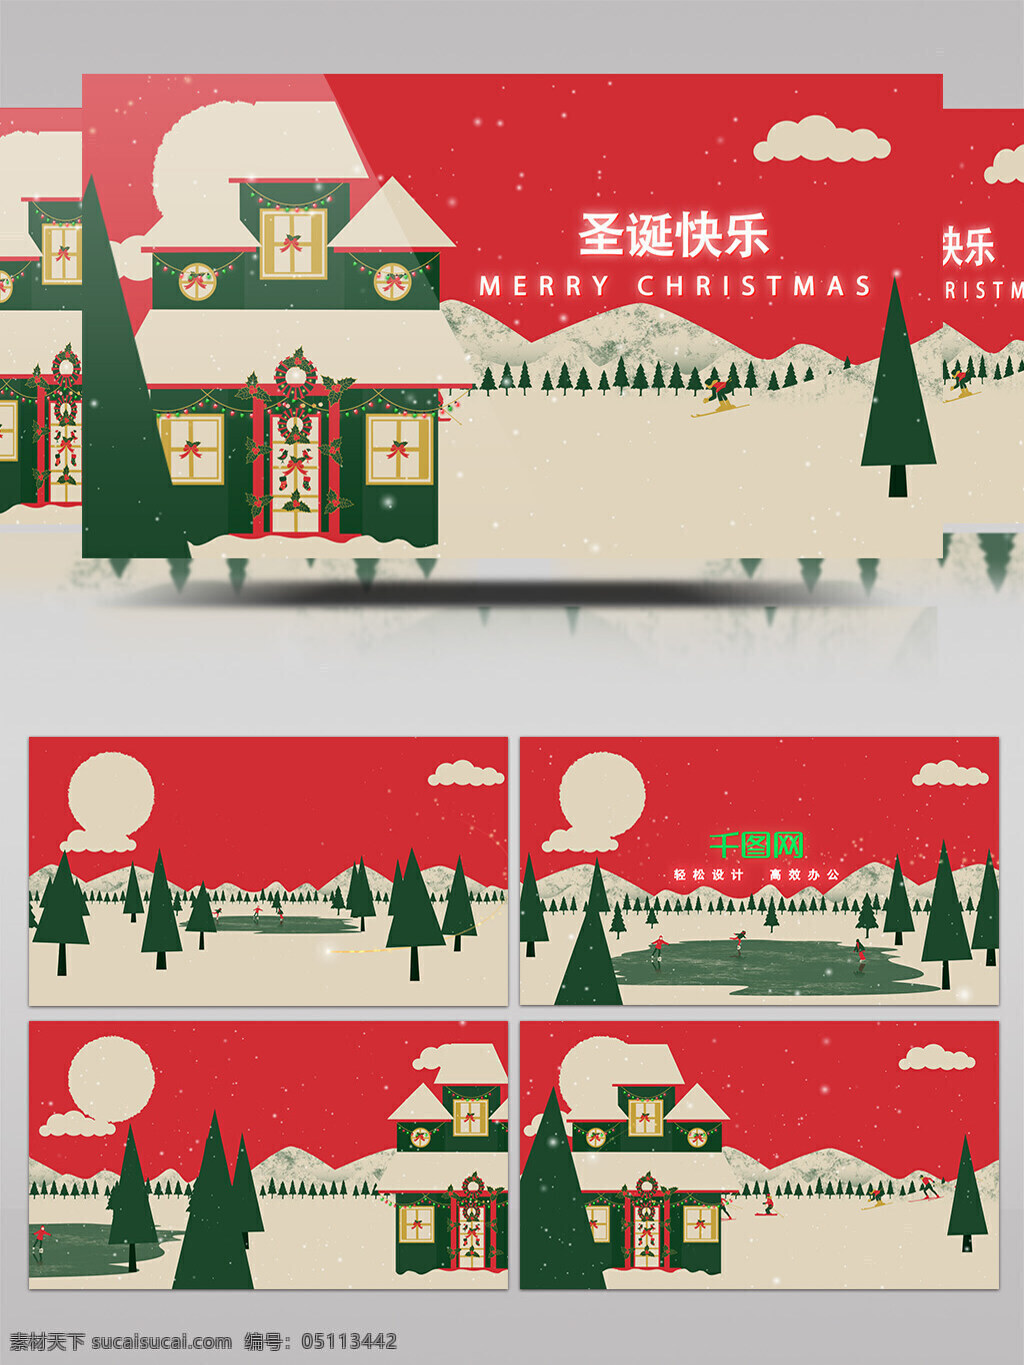 可爱 卡通 圣诞节 片头 ae 模板 圣诞树 滑雪 圣诞老人 下雪 圣诞片头